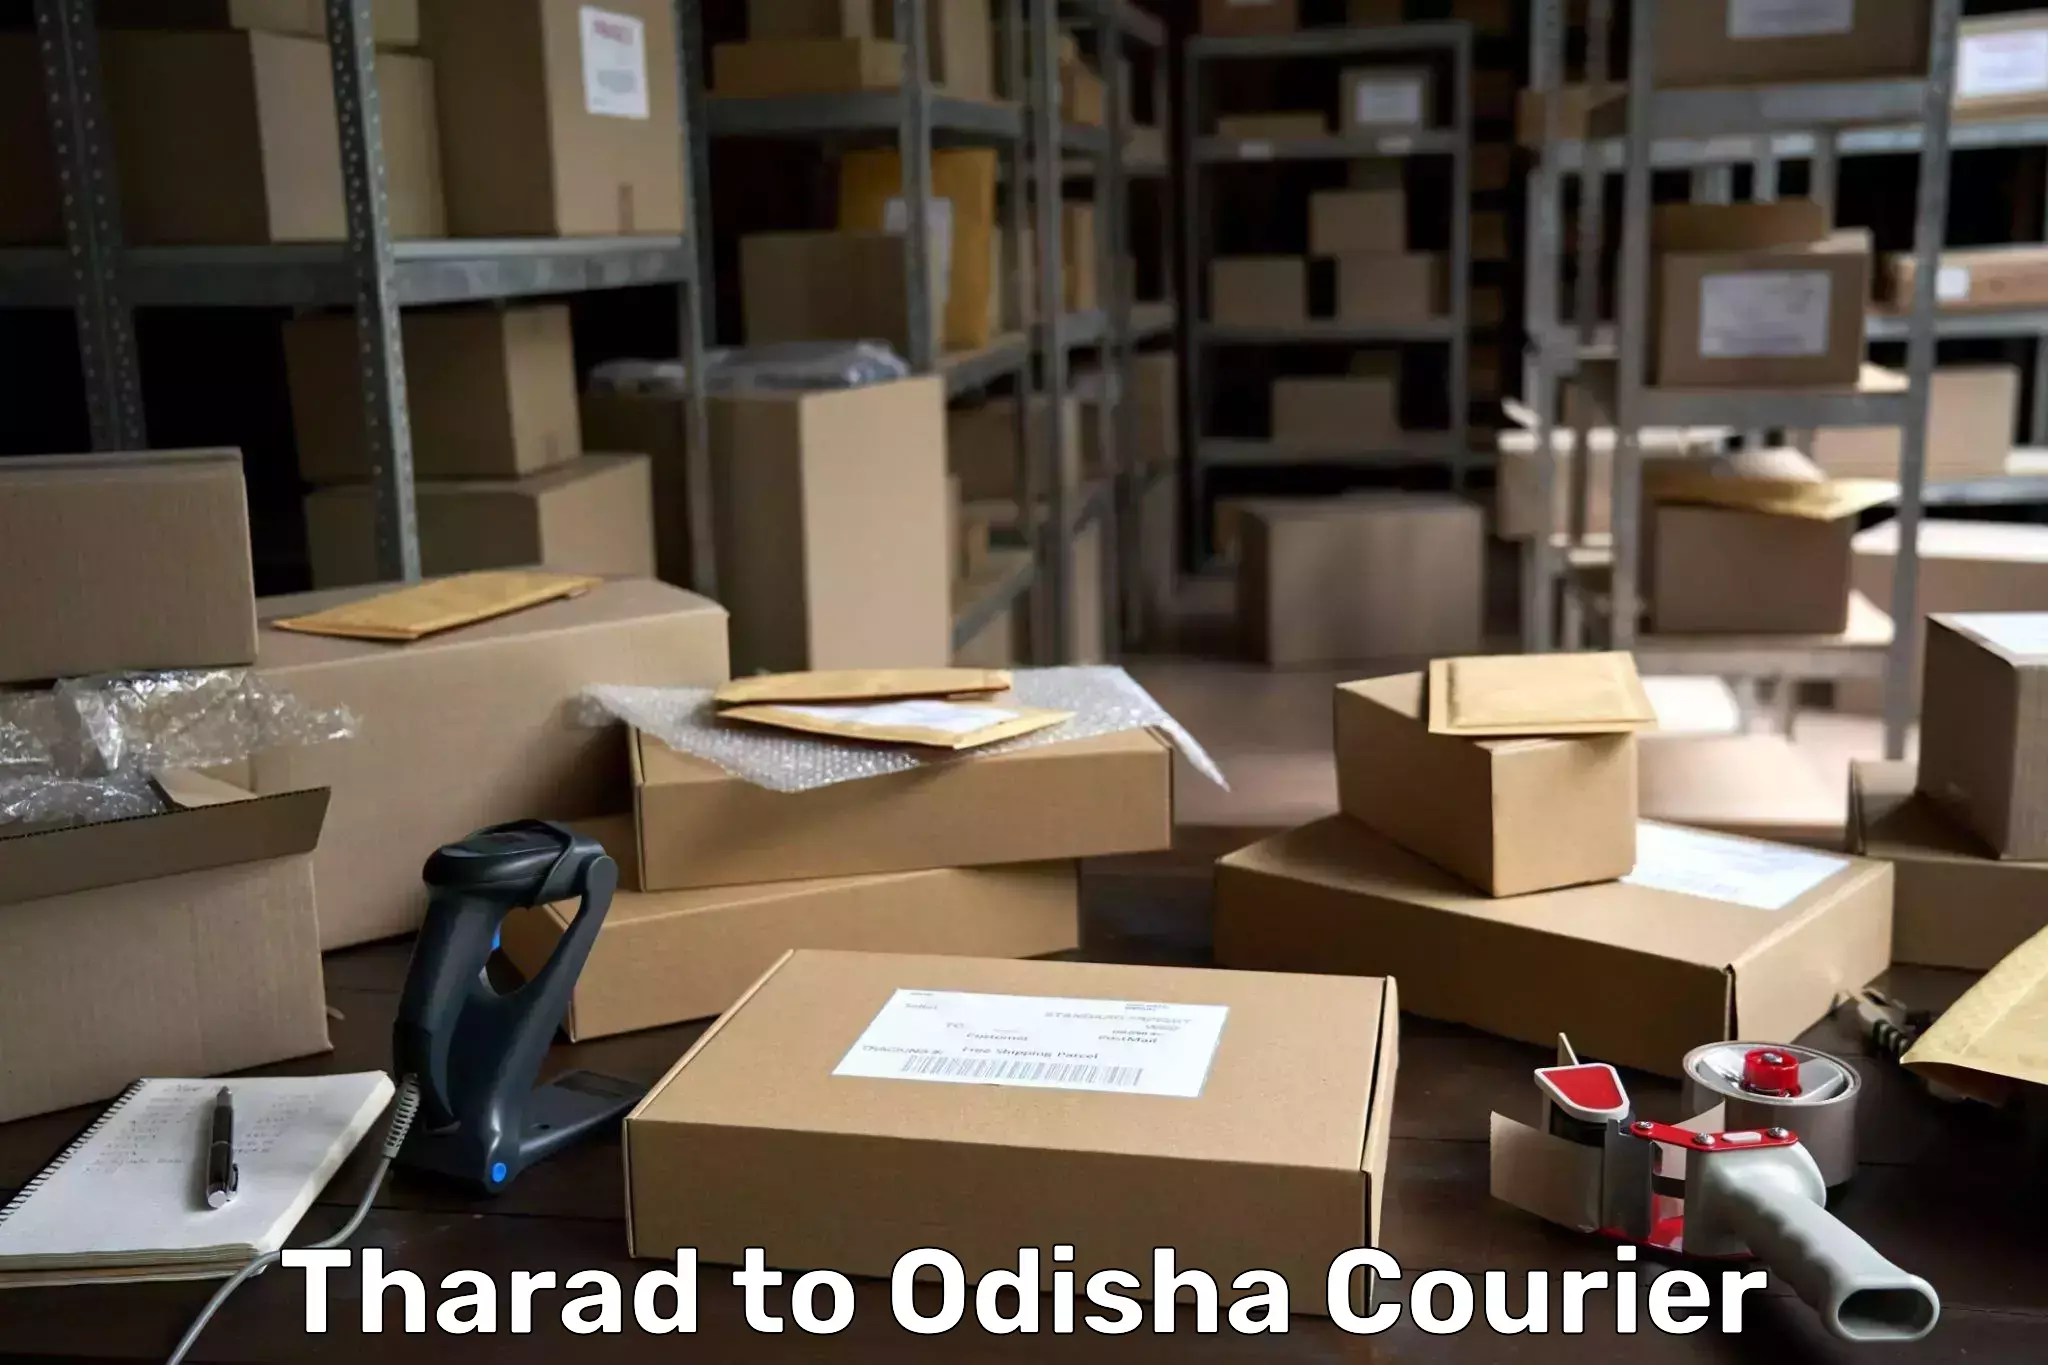 Holiday shipping services Tharad to Sukinda